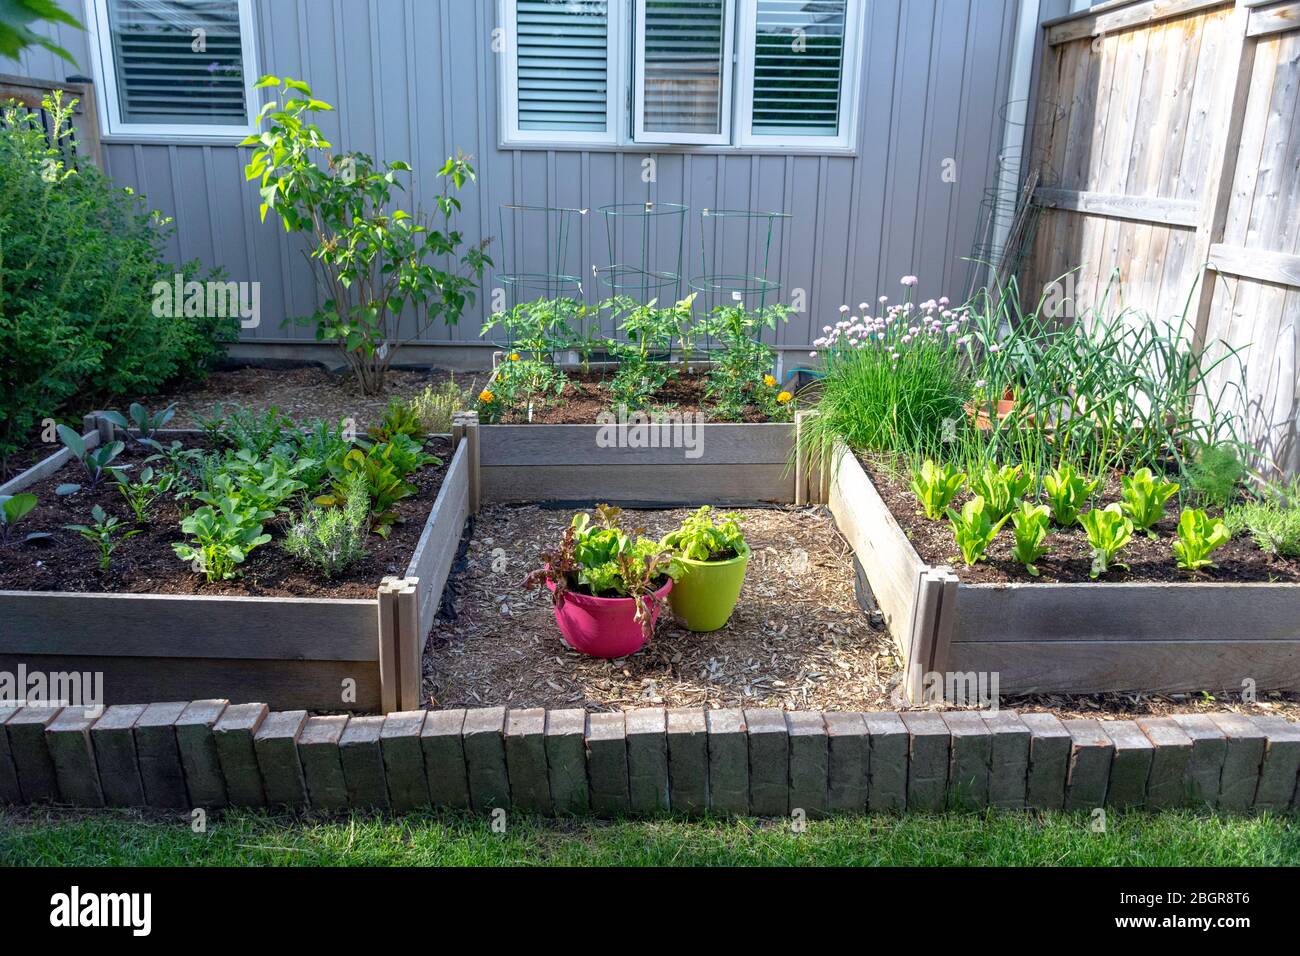 Parte della crescita della vostra propria tendenza alimentare, questo giardino di verdure cortile contiene grandi letti sopraelevati per la coltivazione di verdure ed erbe durante l'estate. Foto Stock